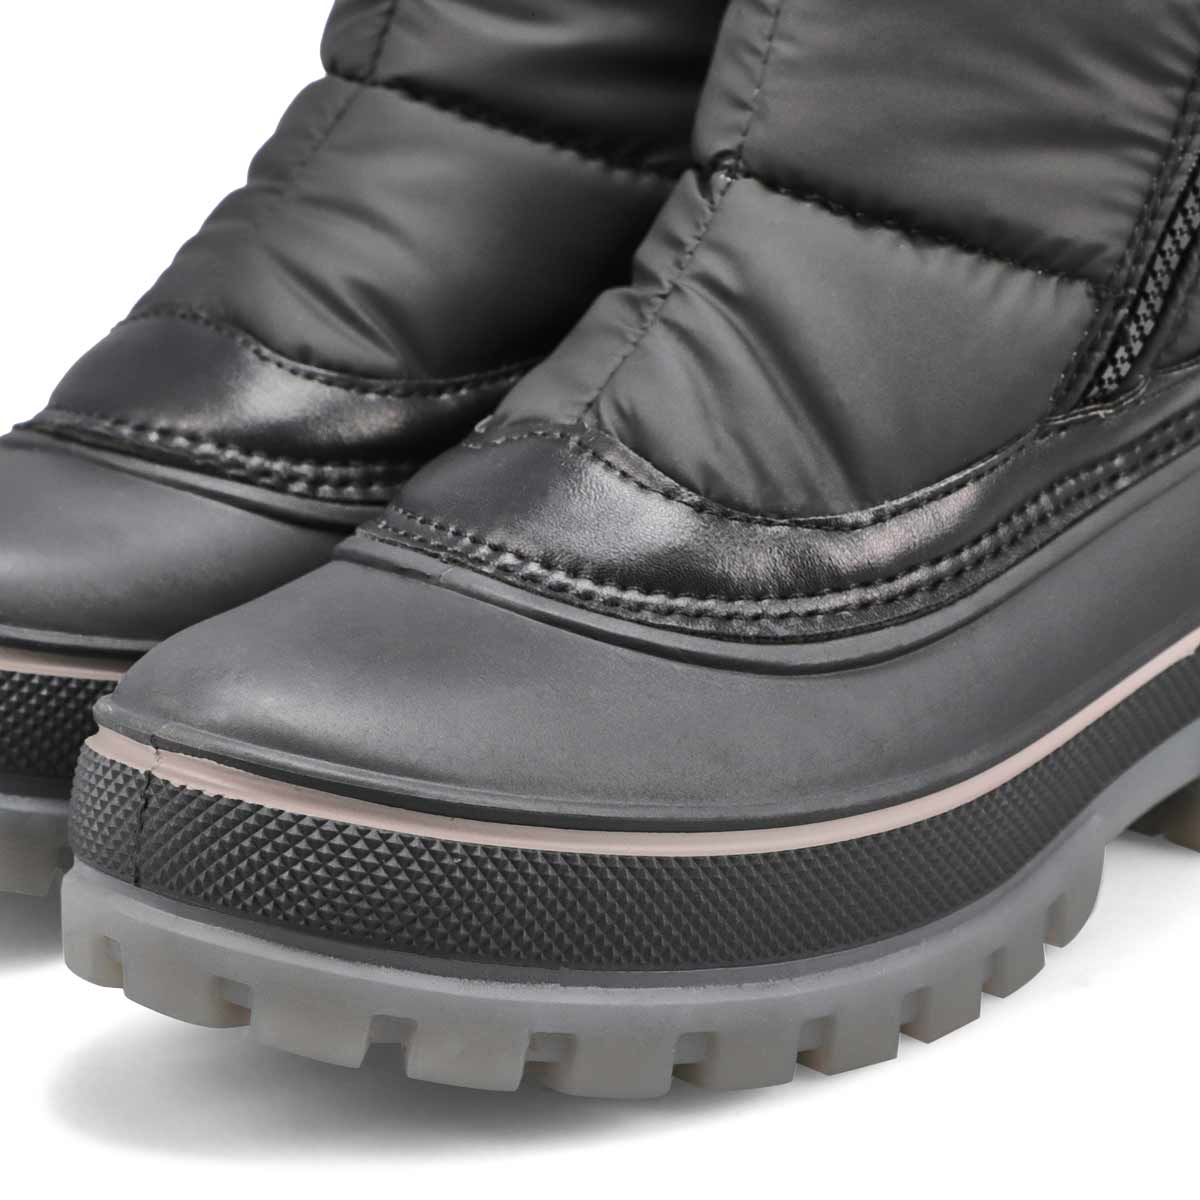 Women's Go-Go Waterproof Winter Boot - Black